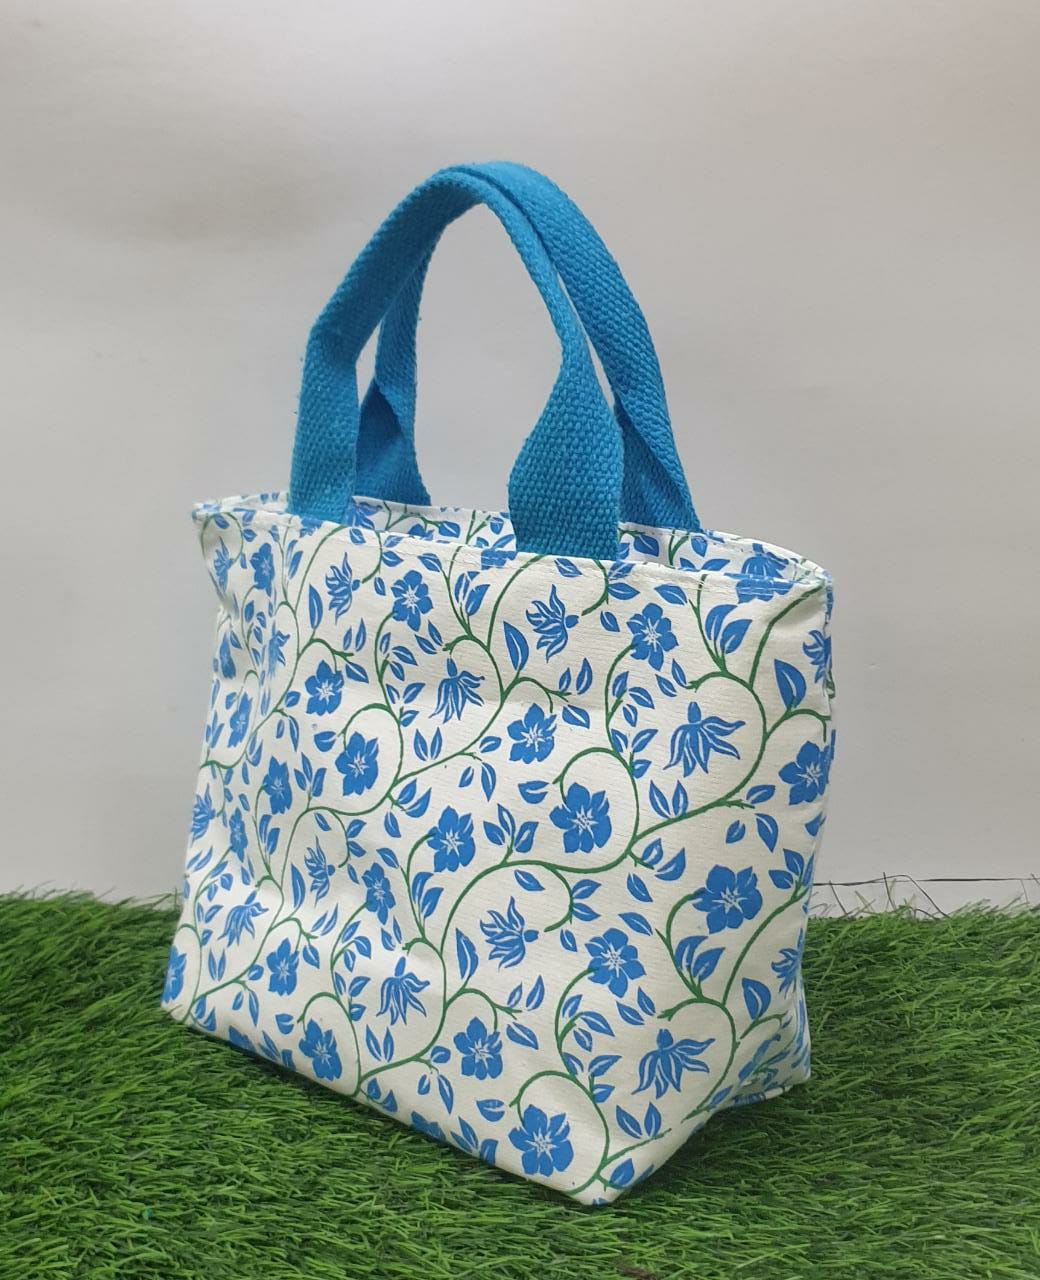 Cotton Floral Bag